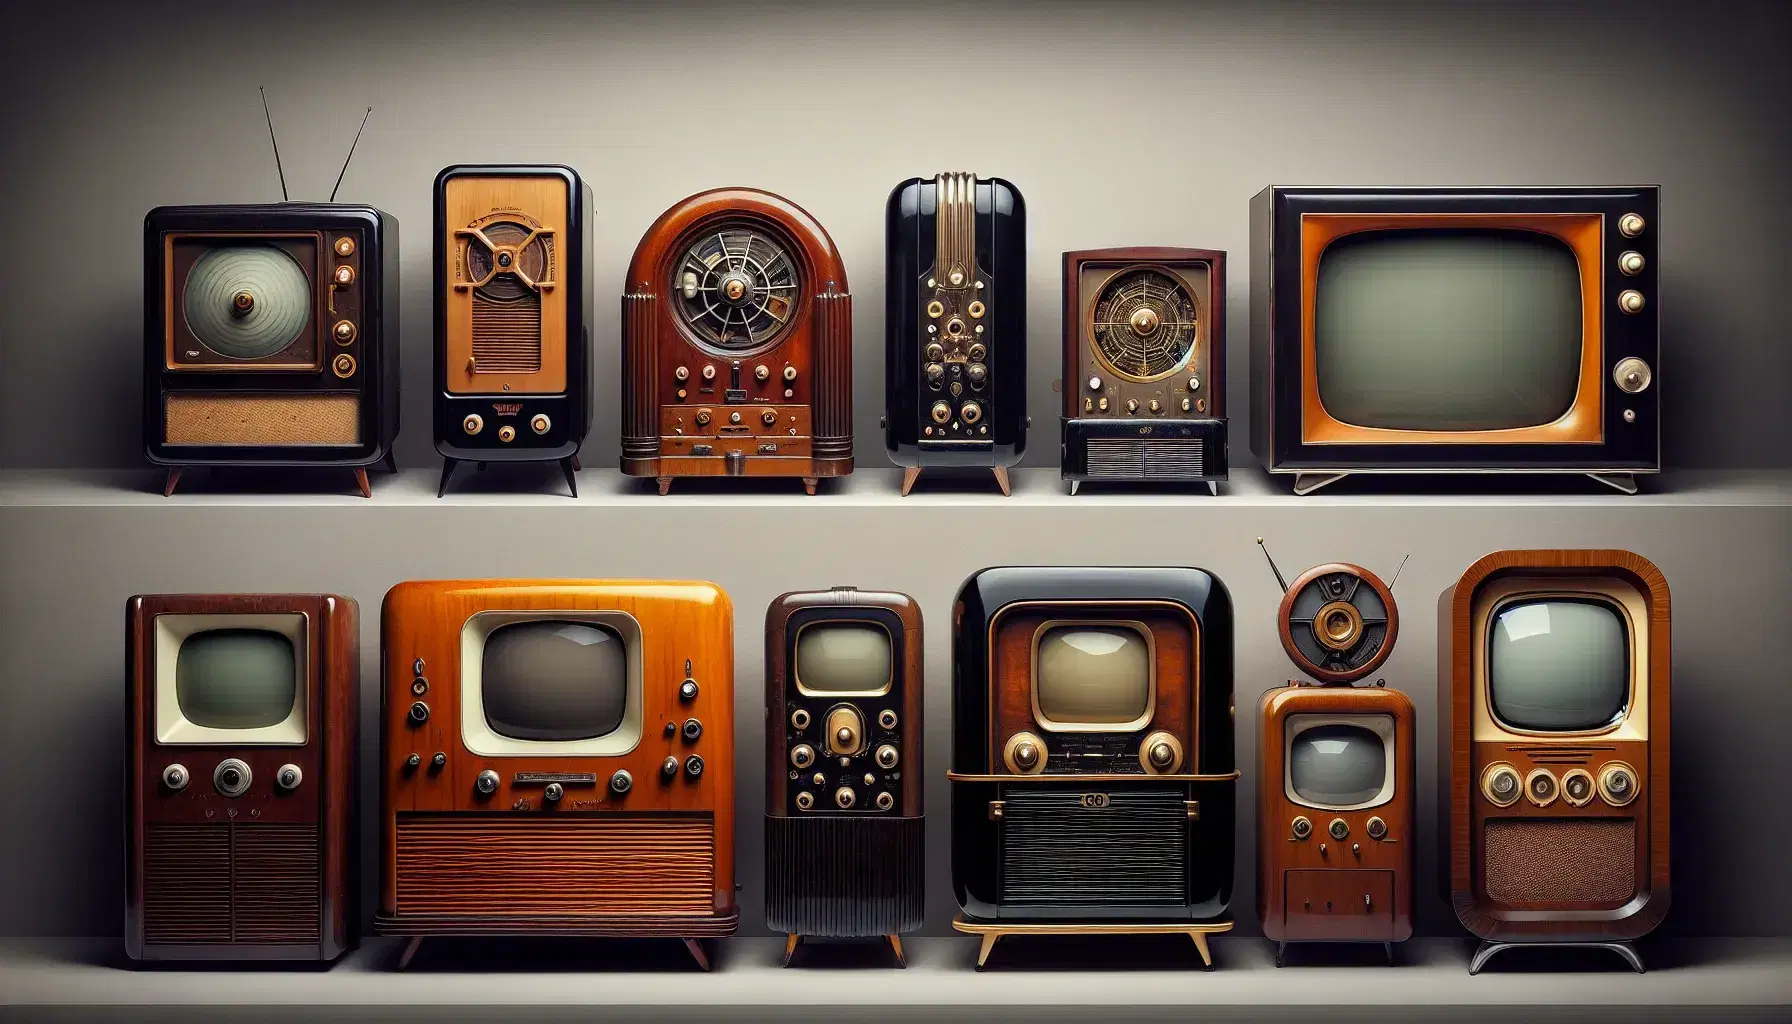 Colección de televisores antiguos a modernos en secuencia cronológica, mostrando la evolución tecnológica desde los años 1920 hasta la actualidad.